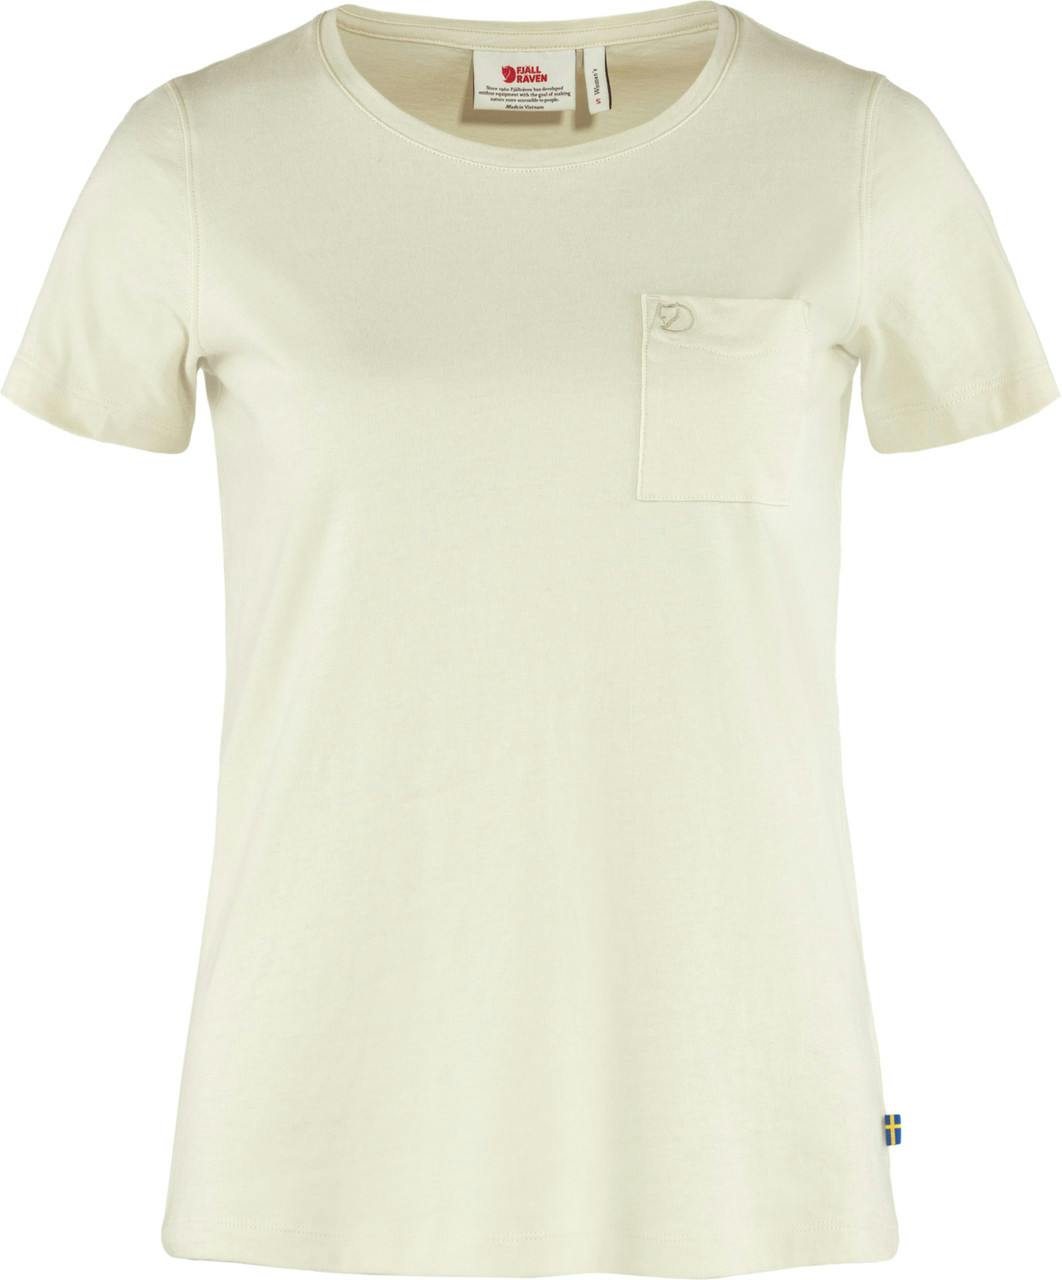 T-shirt Ovik Blanc craie